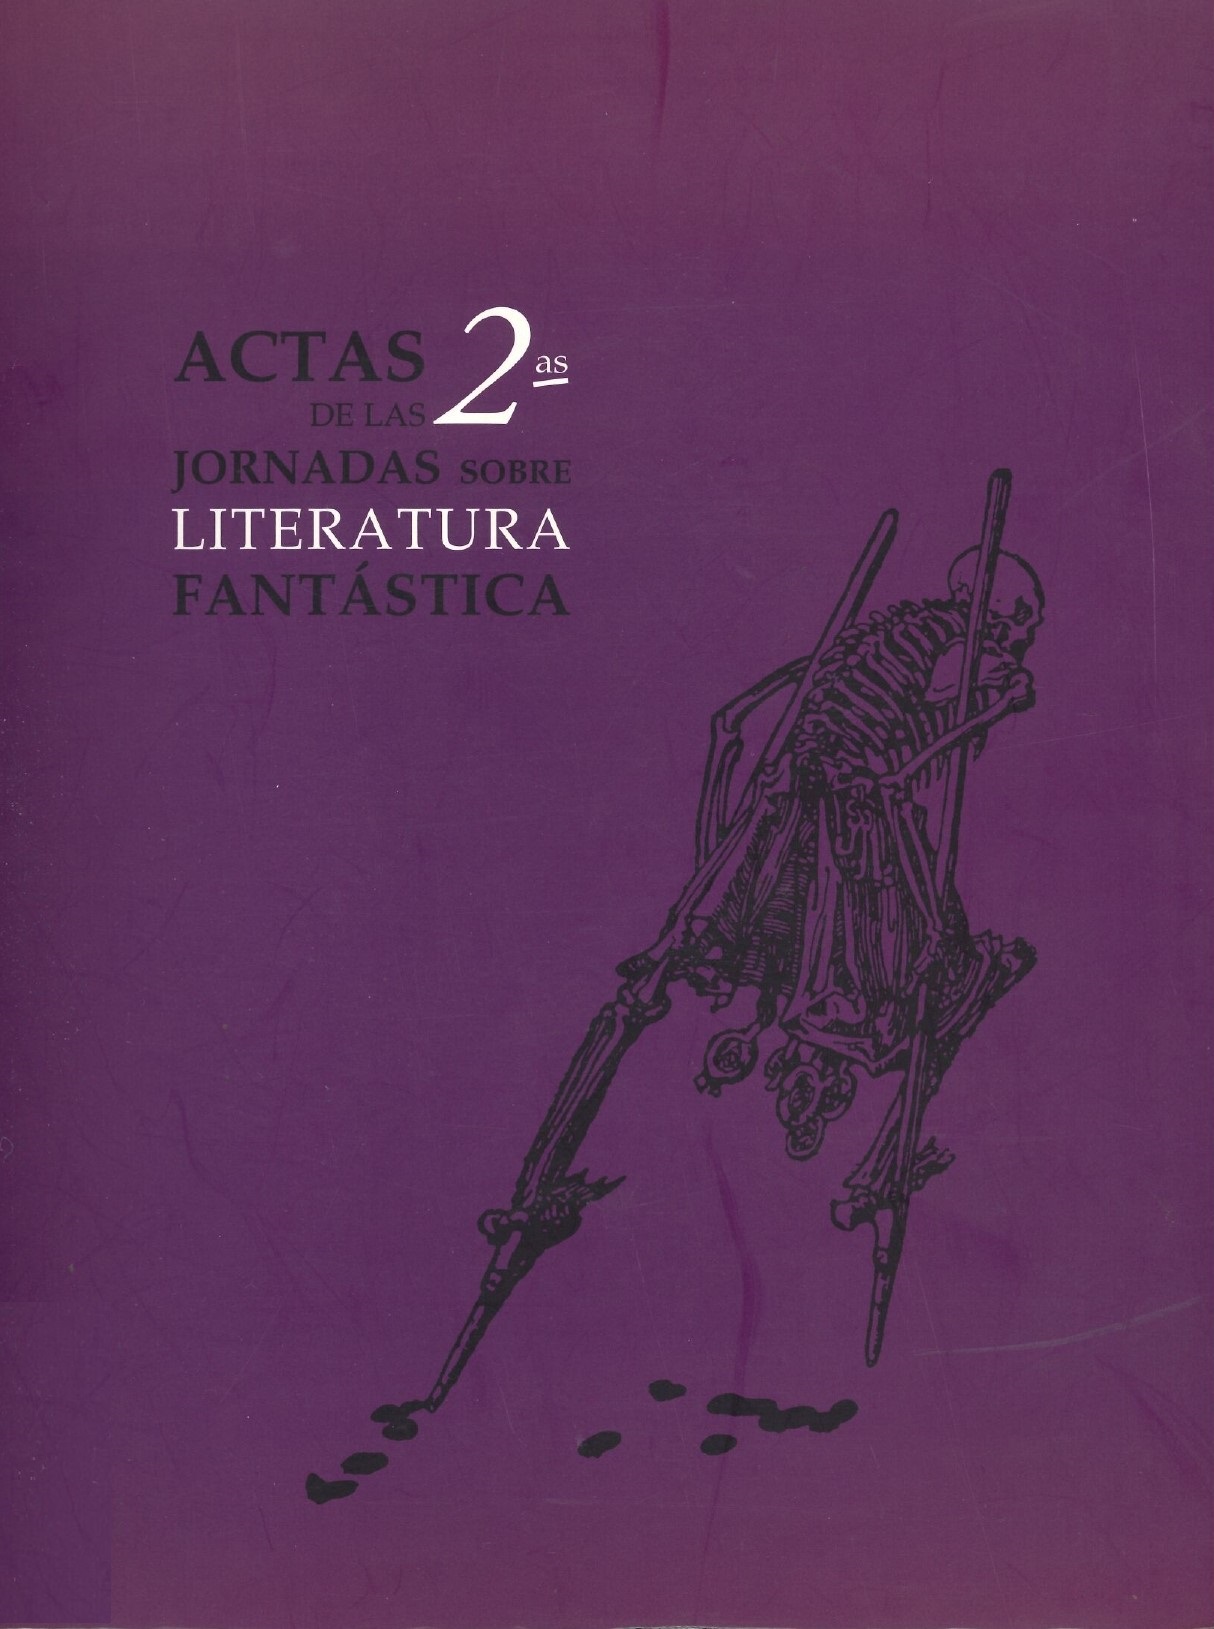 Imagen de portada del libro Actas de las Segundas Jornadas sobre Literatura Fantástica